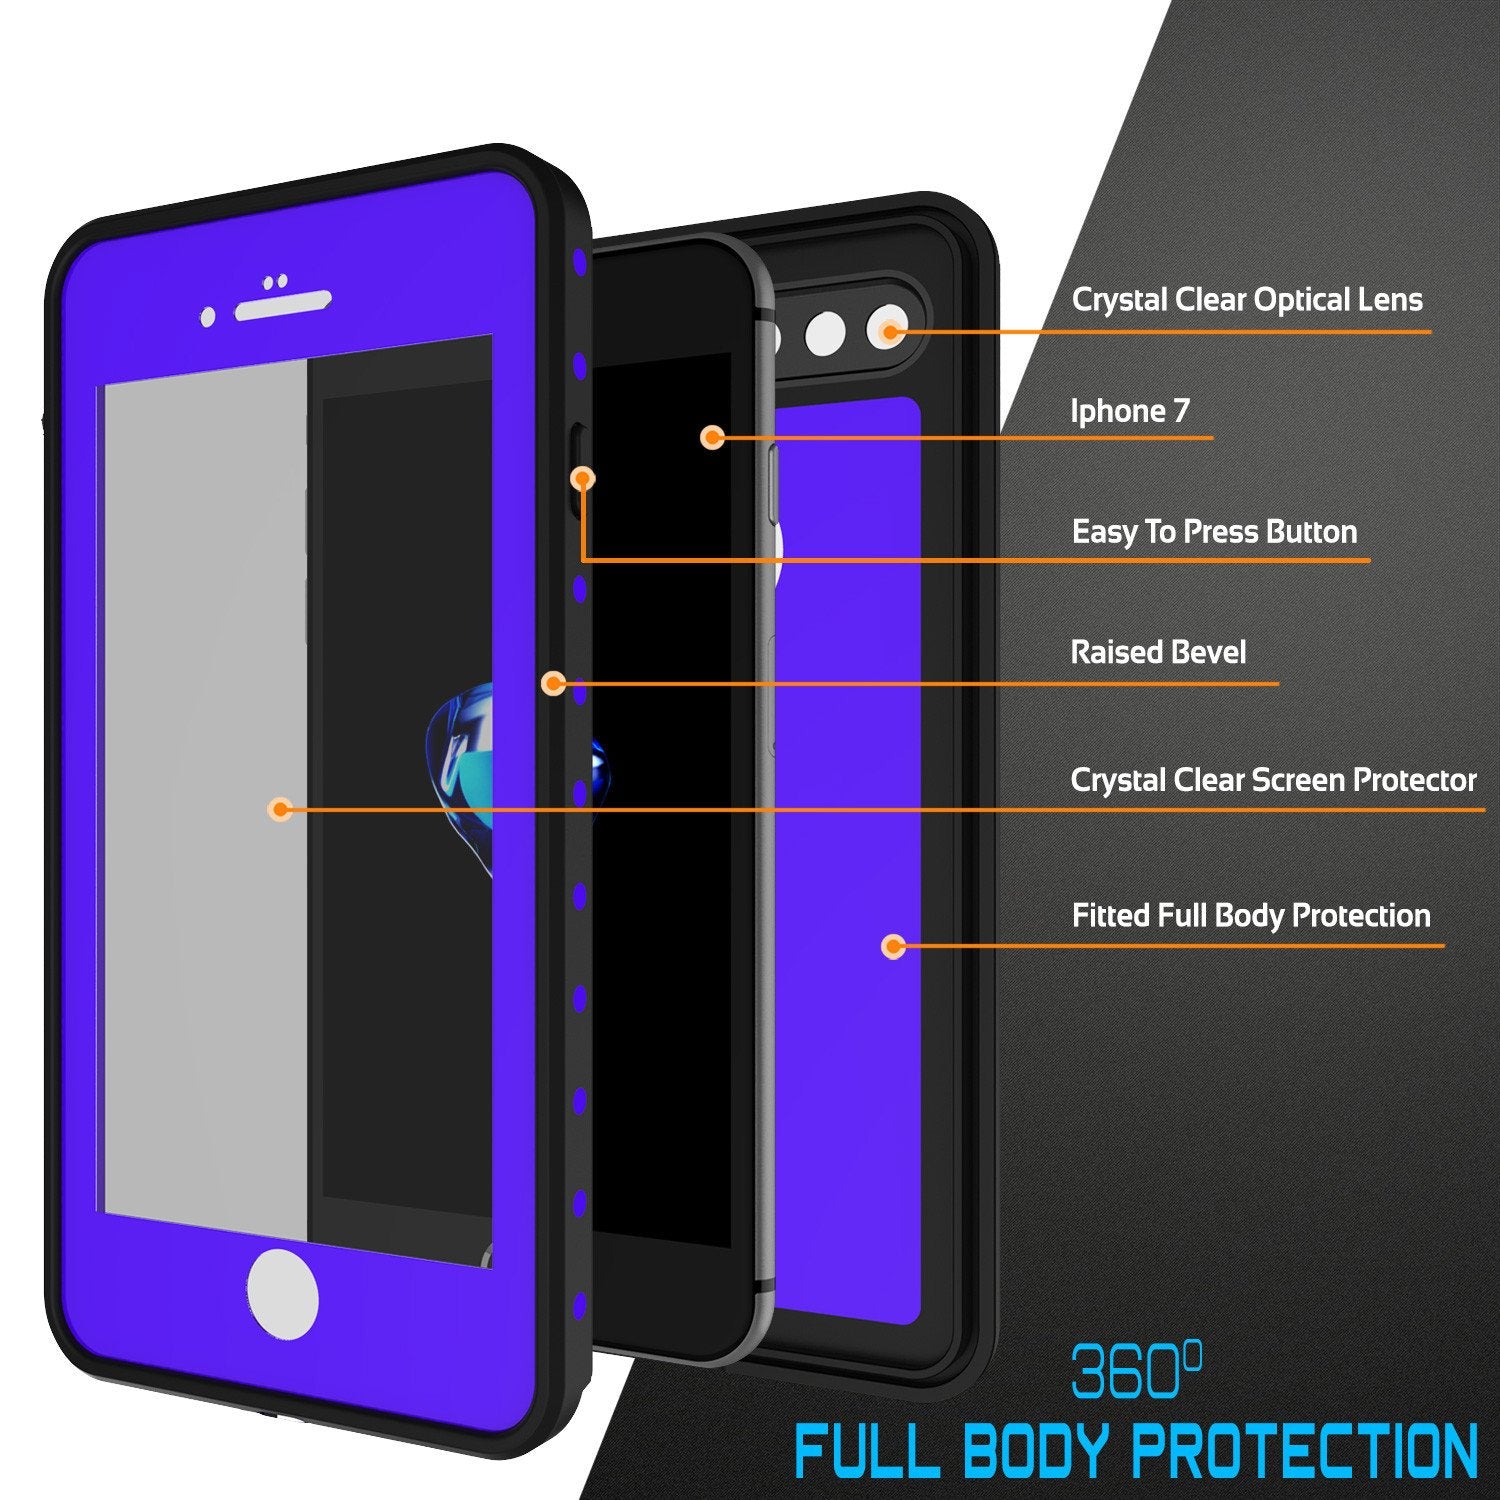 iPhone 8+ Plus Waterproof Case, Punkcase [StudStar Series] [Purple] [Slim Fit] [IP68 Certified] [Shockproof] [Dirtproof] Armor Cover